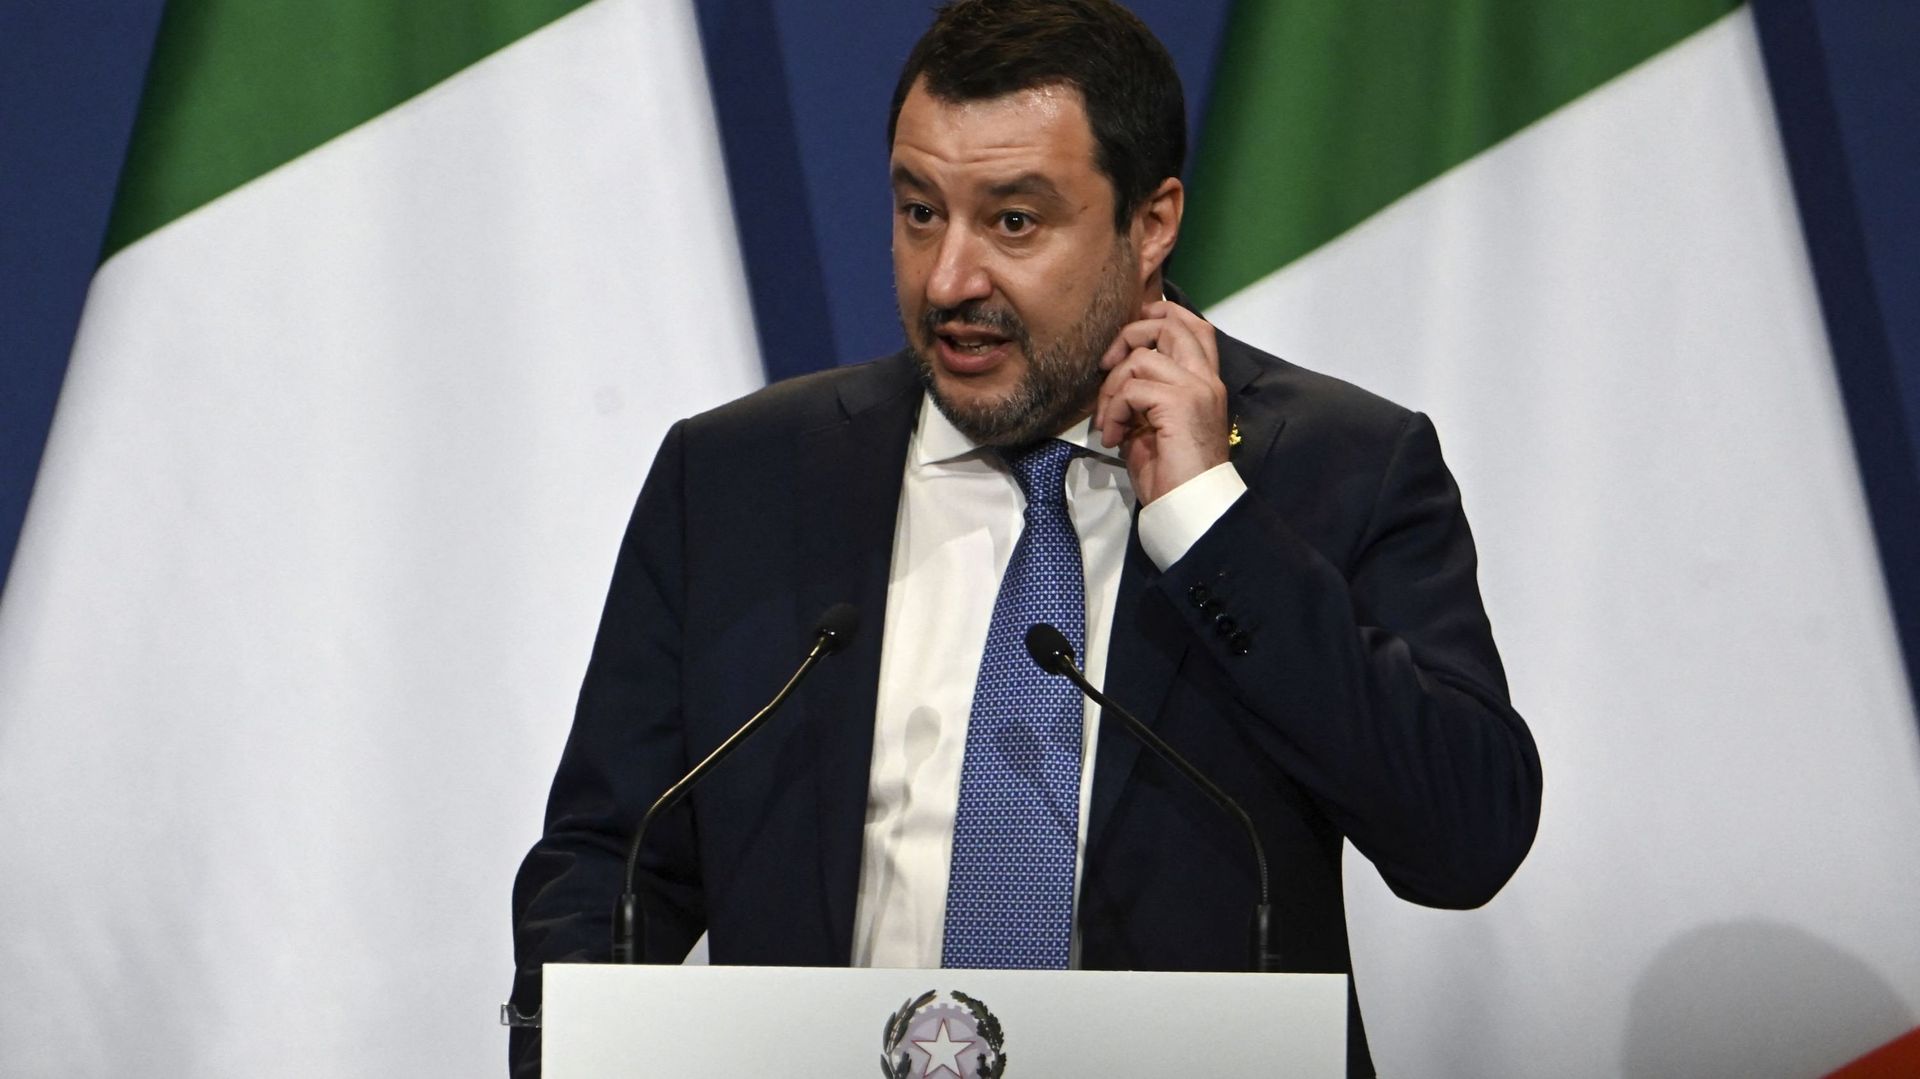 Matteo Salvini sera jugé pour avoir bloqué des migrants en mer